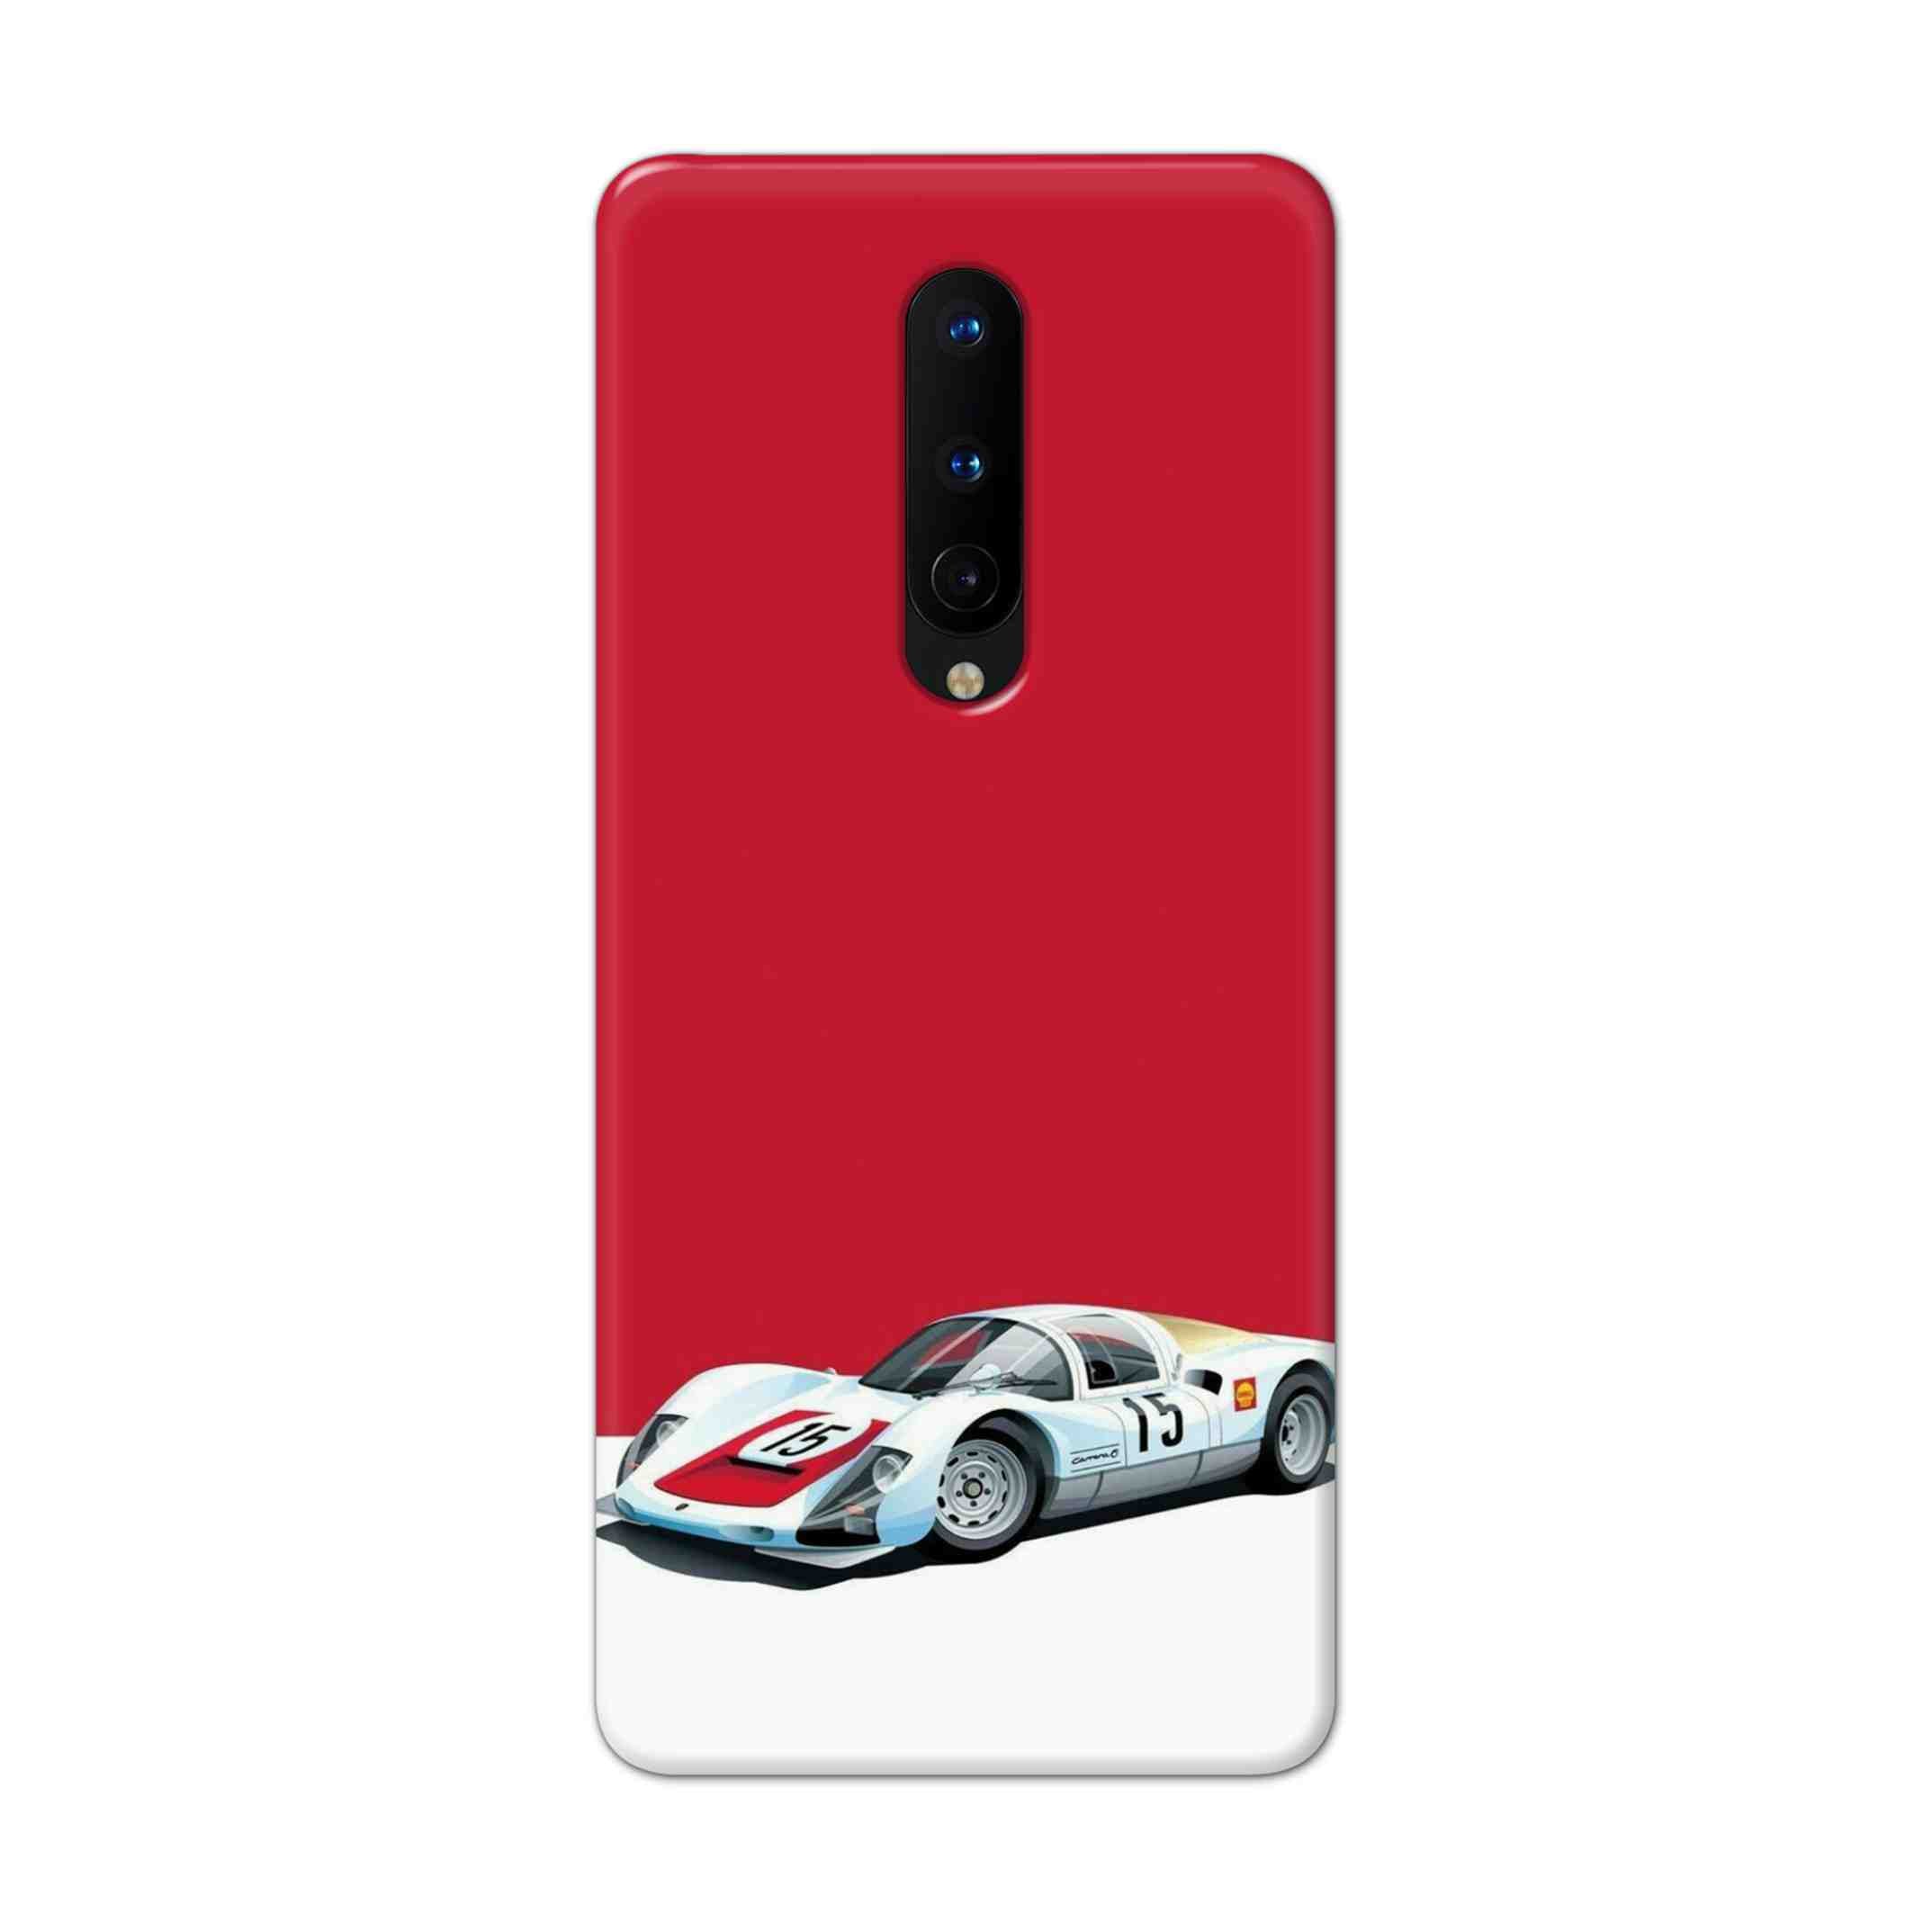 Buy Ferrari F15 Hard Back Mobile Phone Case Cover For OnePlus 8 Online